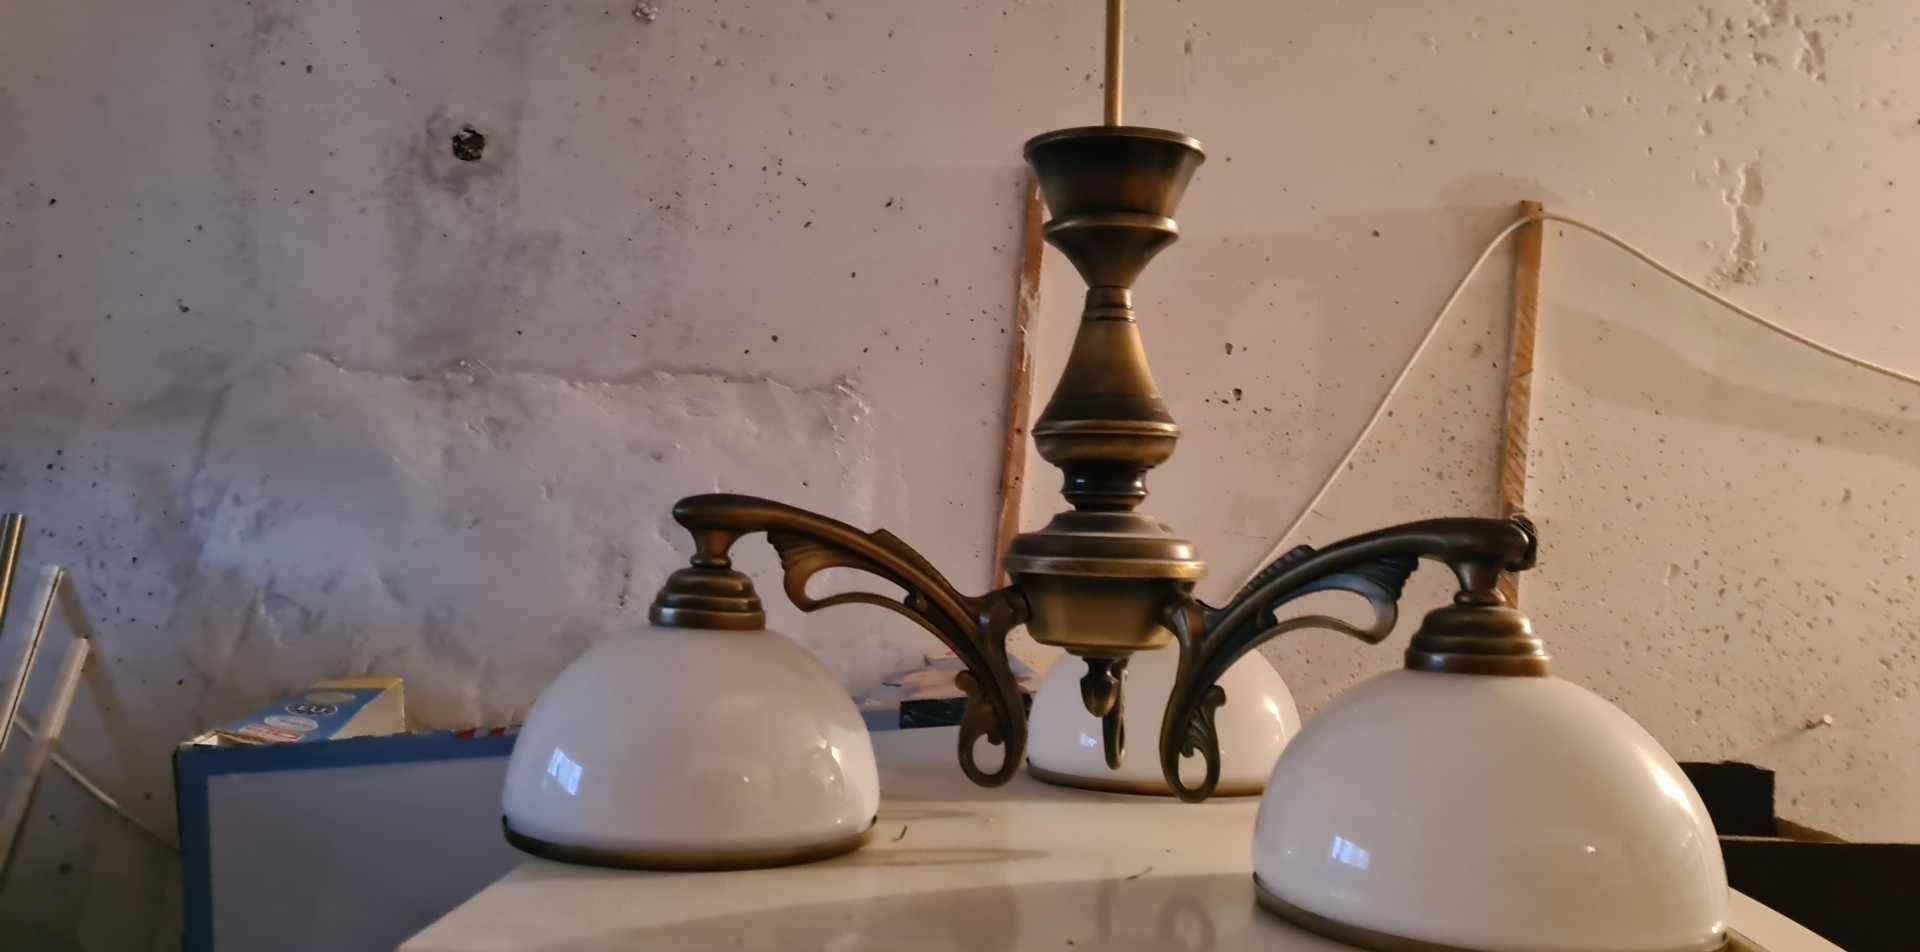 Lampa sufitowa trzypunktowa żyrandol w stylu retro